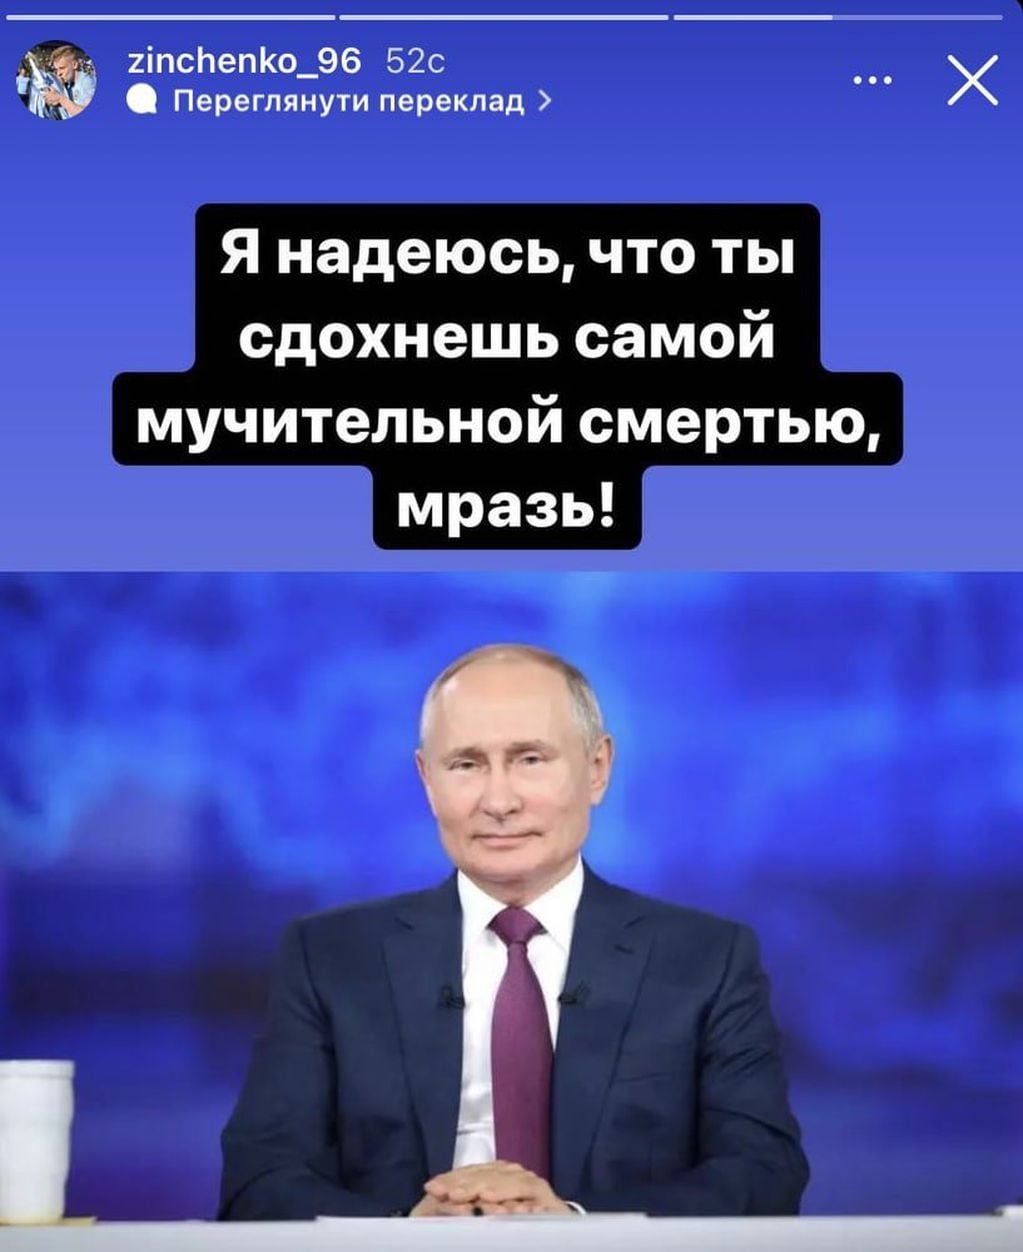 El polémico mensaje de Zinchenko, futbolista ucraniano del Manchester City, pidiendo una muerte "más dolorsa" para Putin.